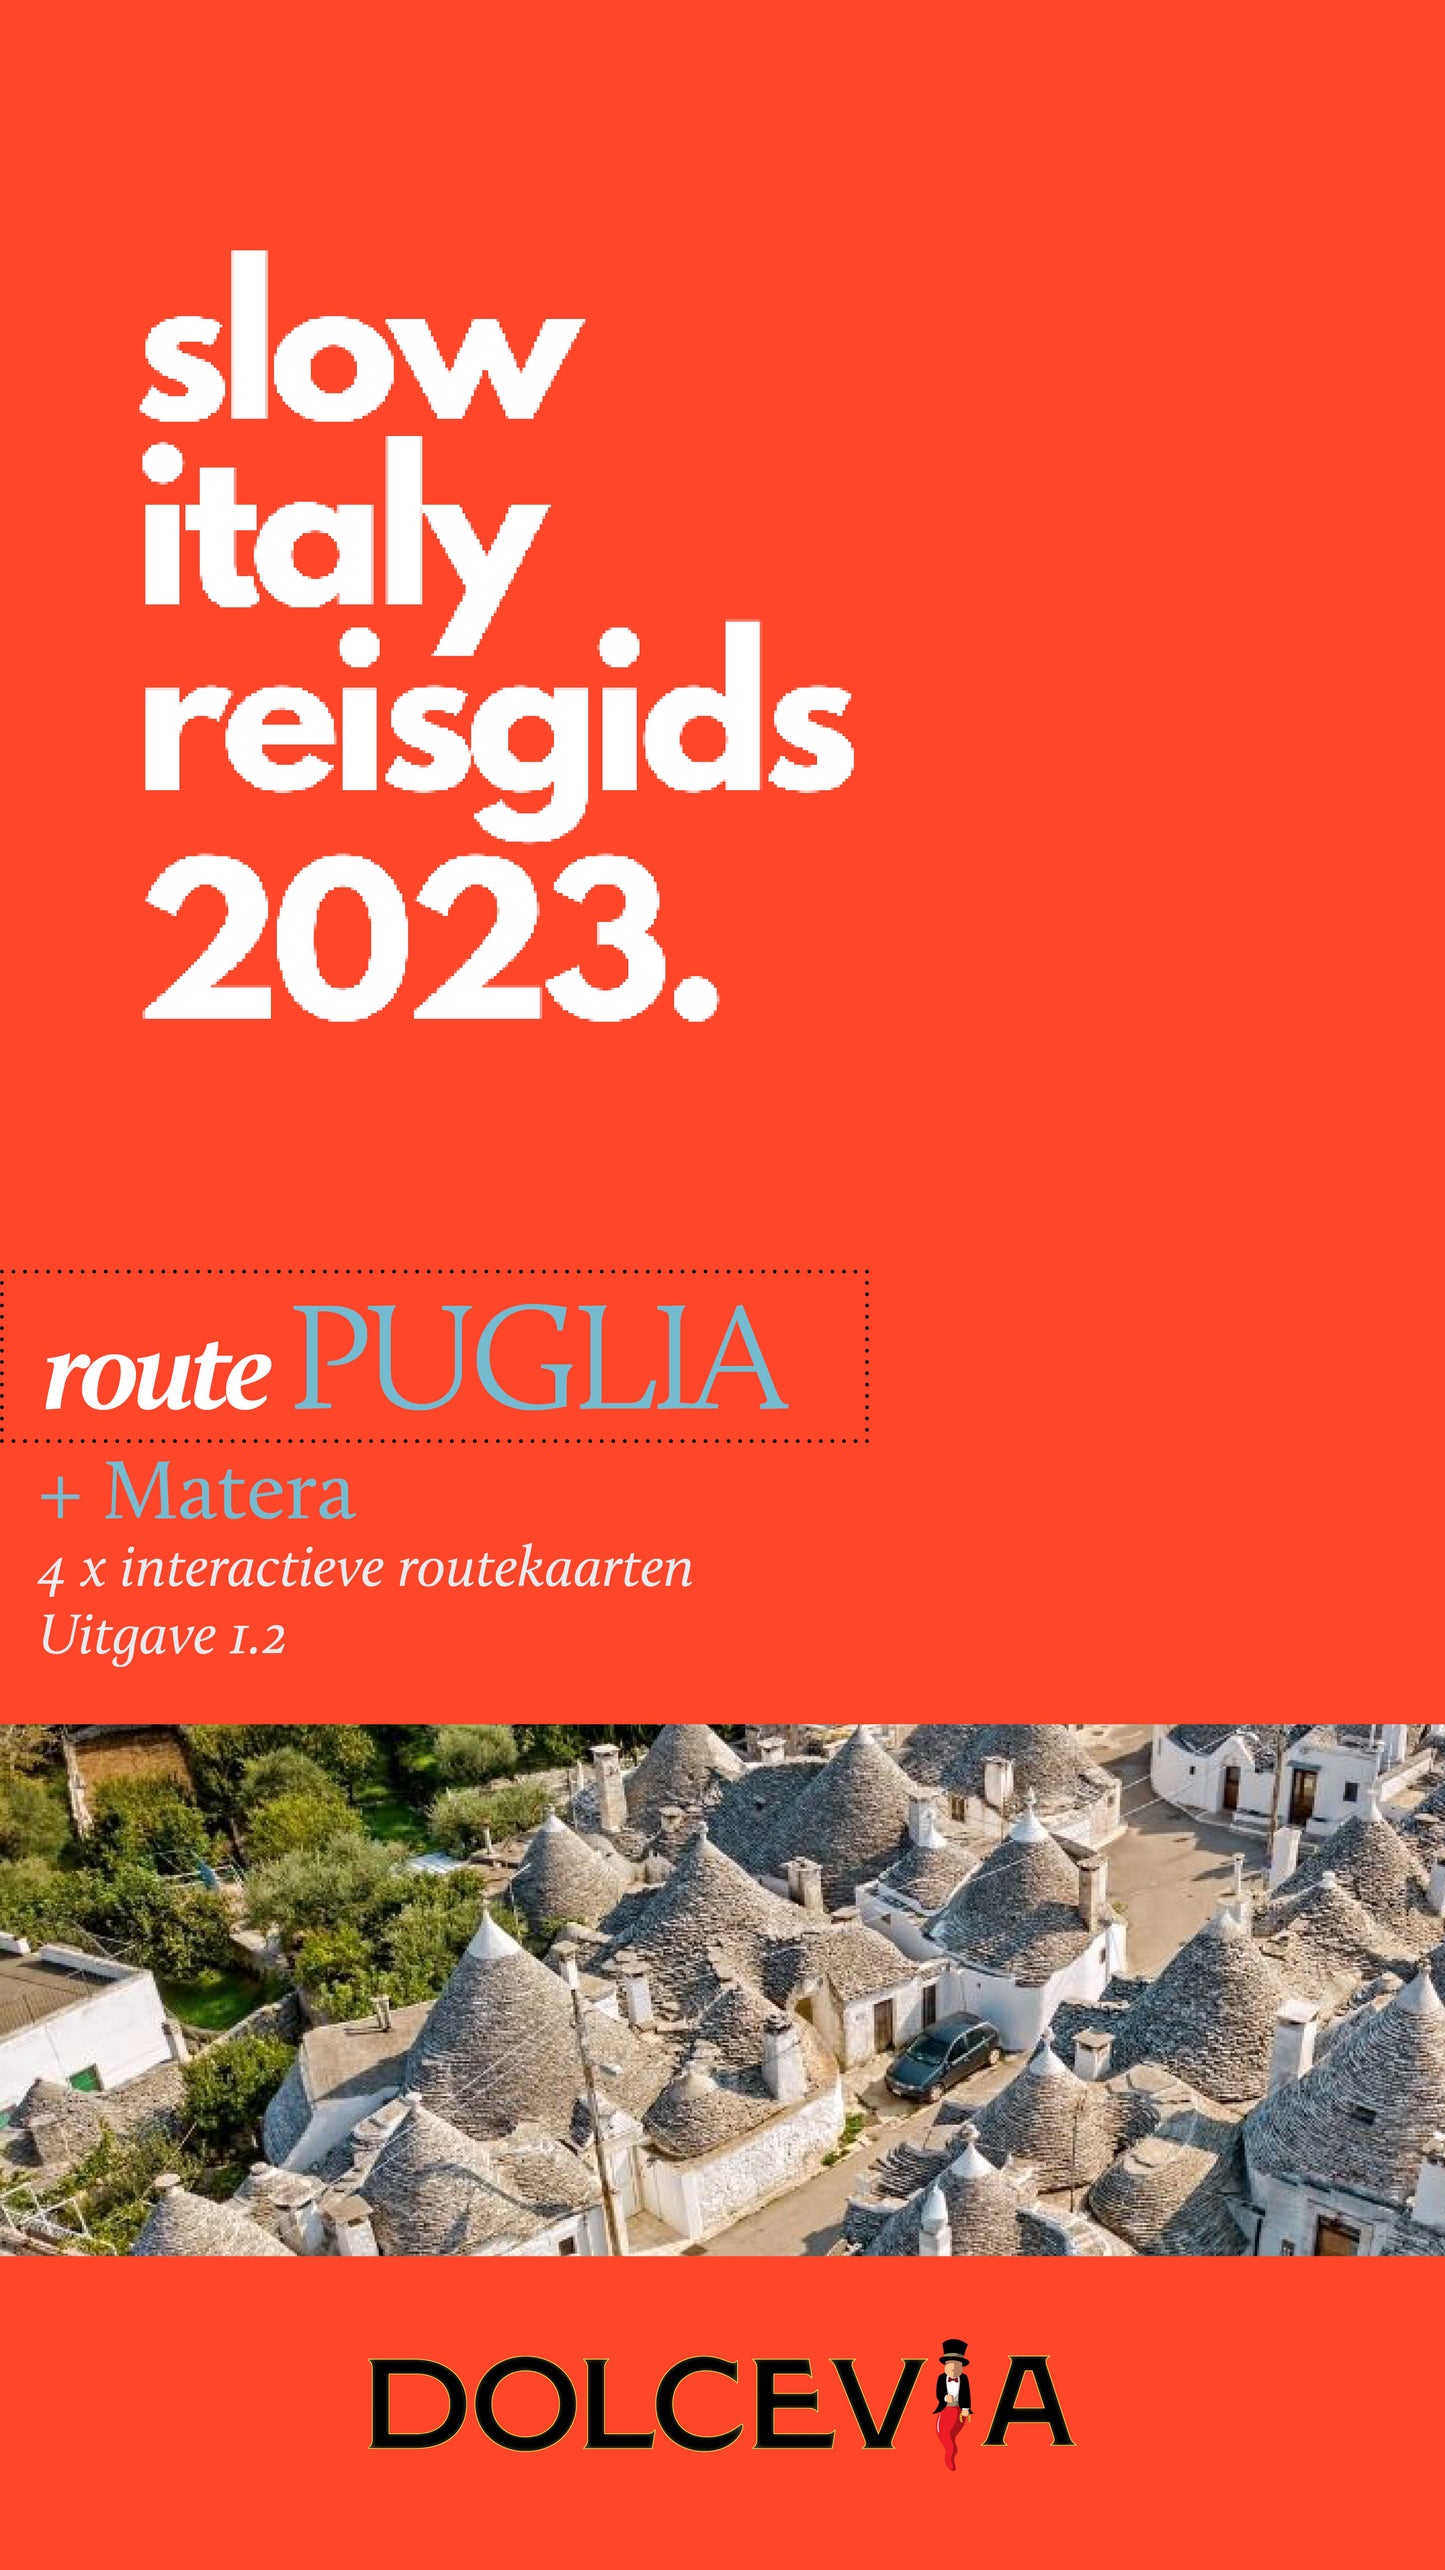 SlowItaly Puglia Reisgids 2024 NIEUWE VERSIE